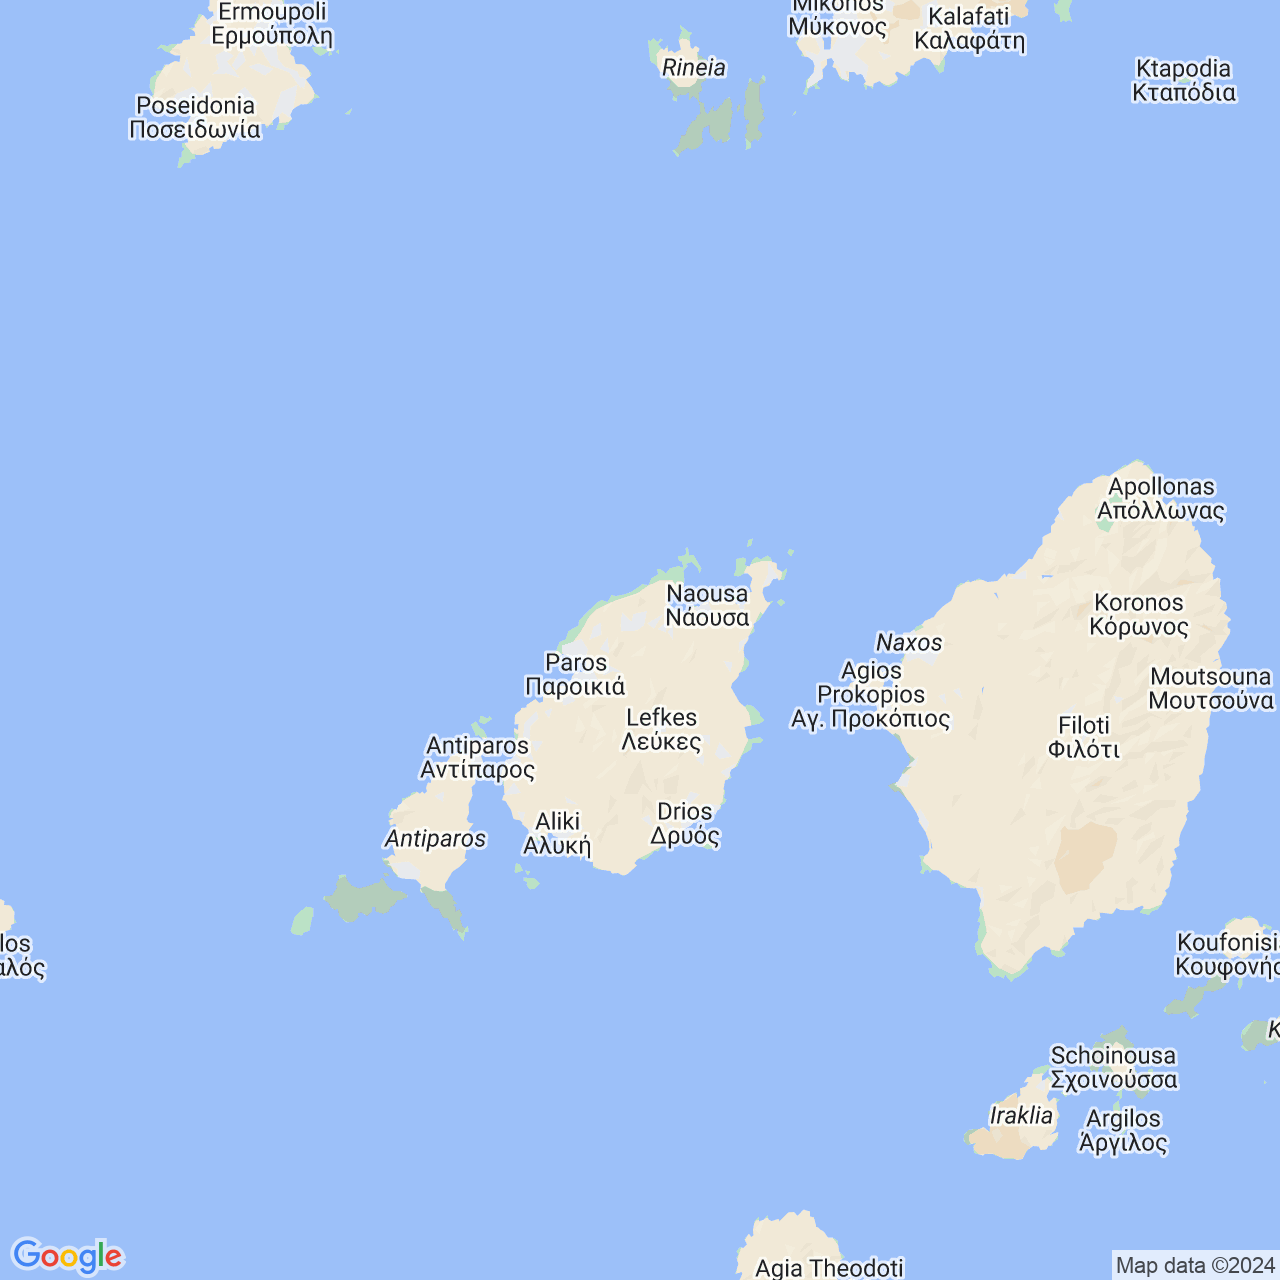 Google maps image